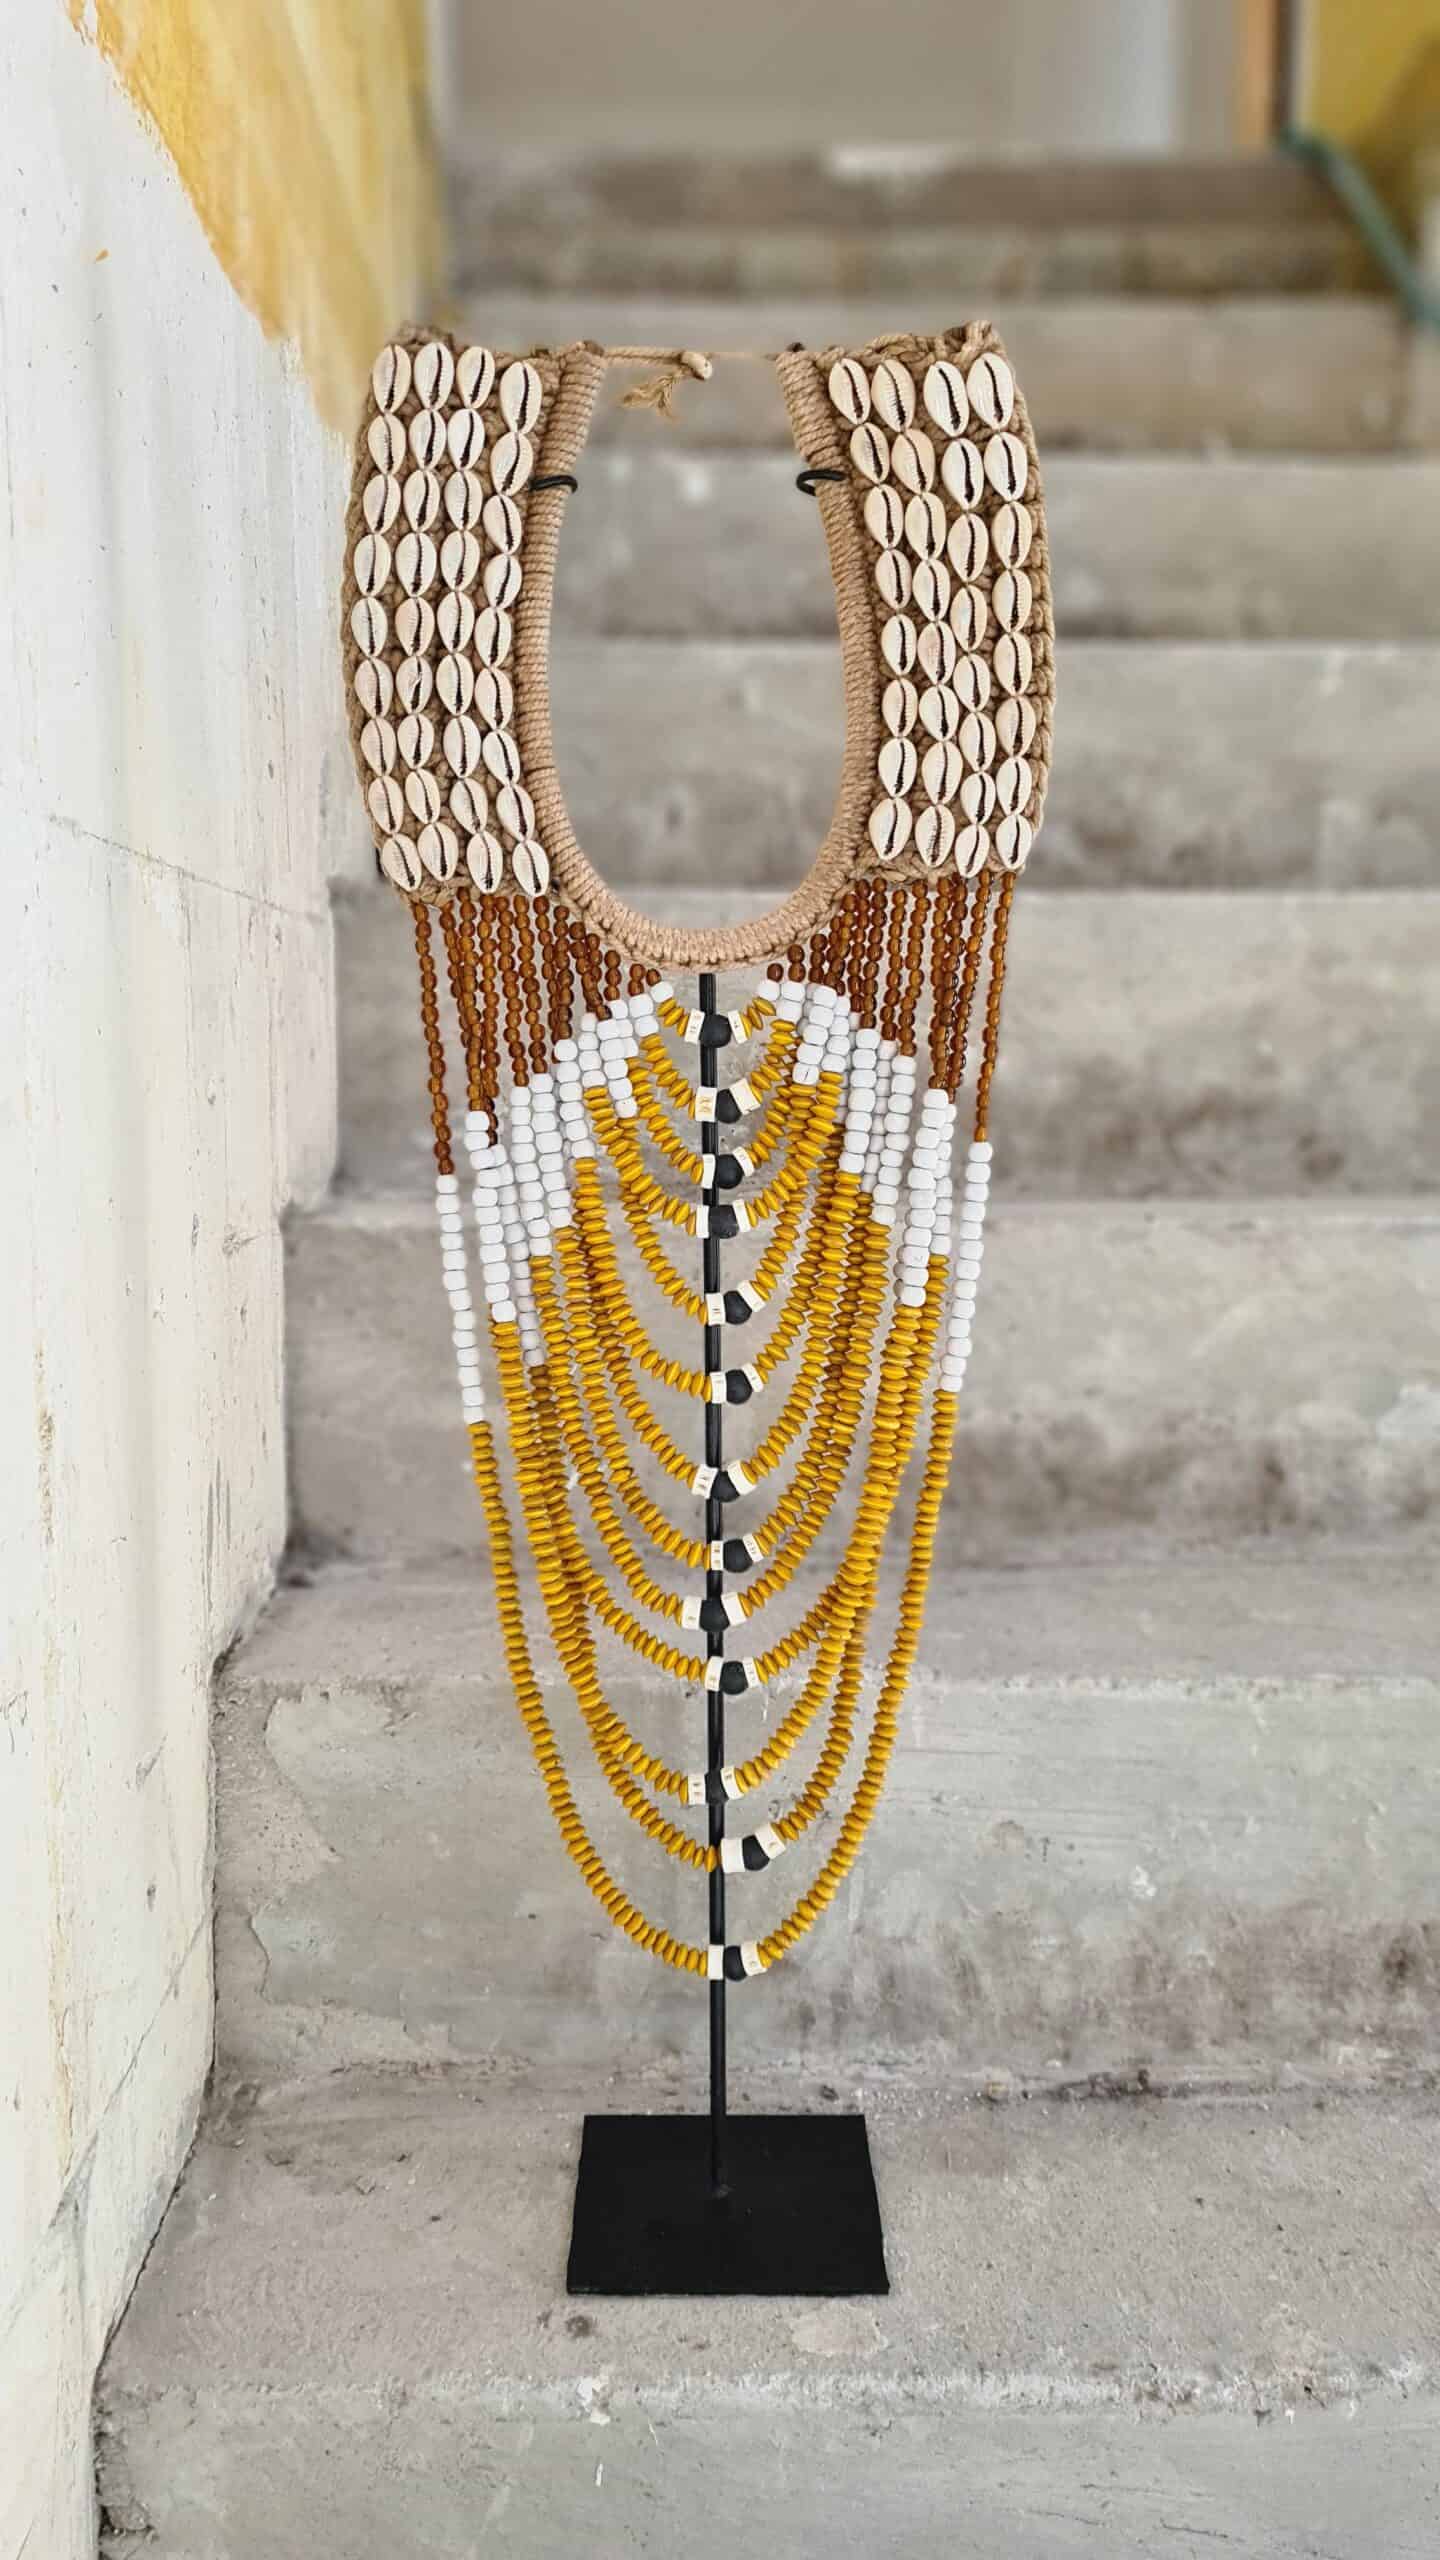 Siurana Shell Collar Necklace - Bohemian Fashion Statement